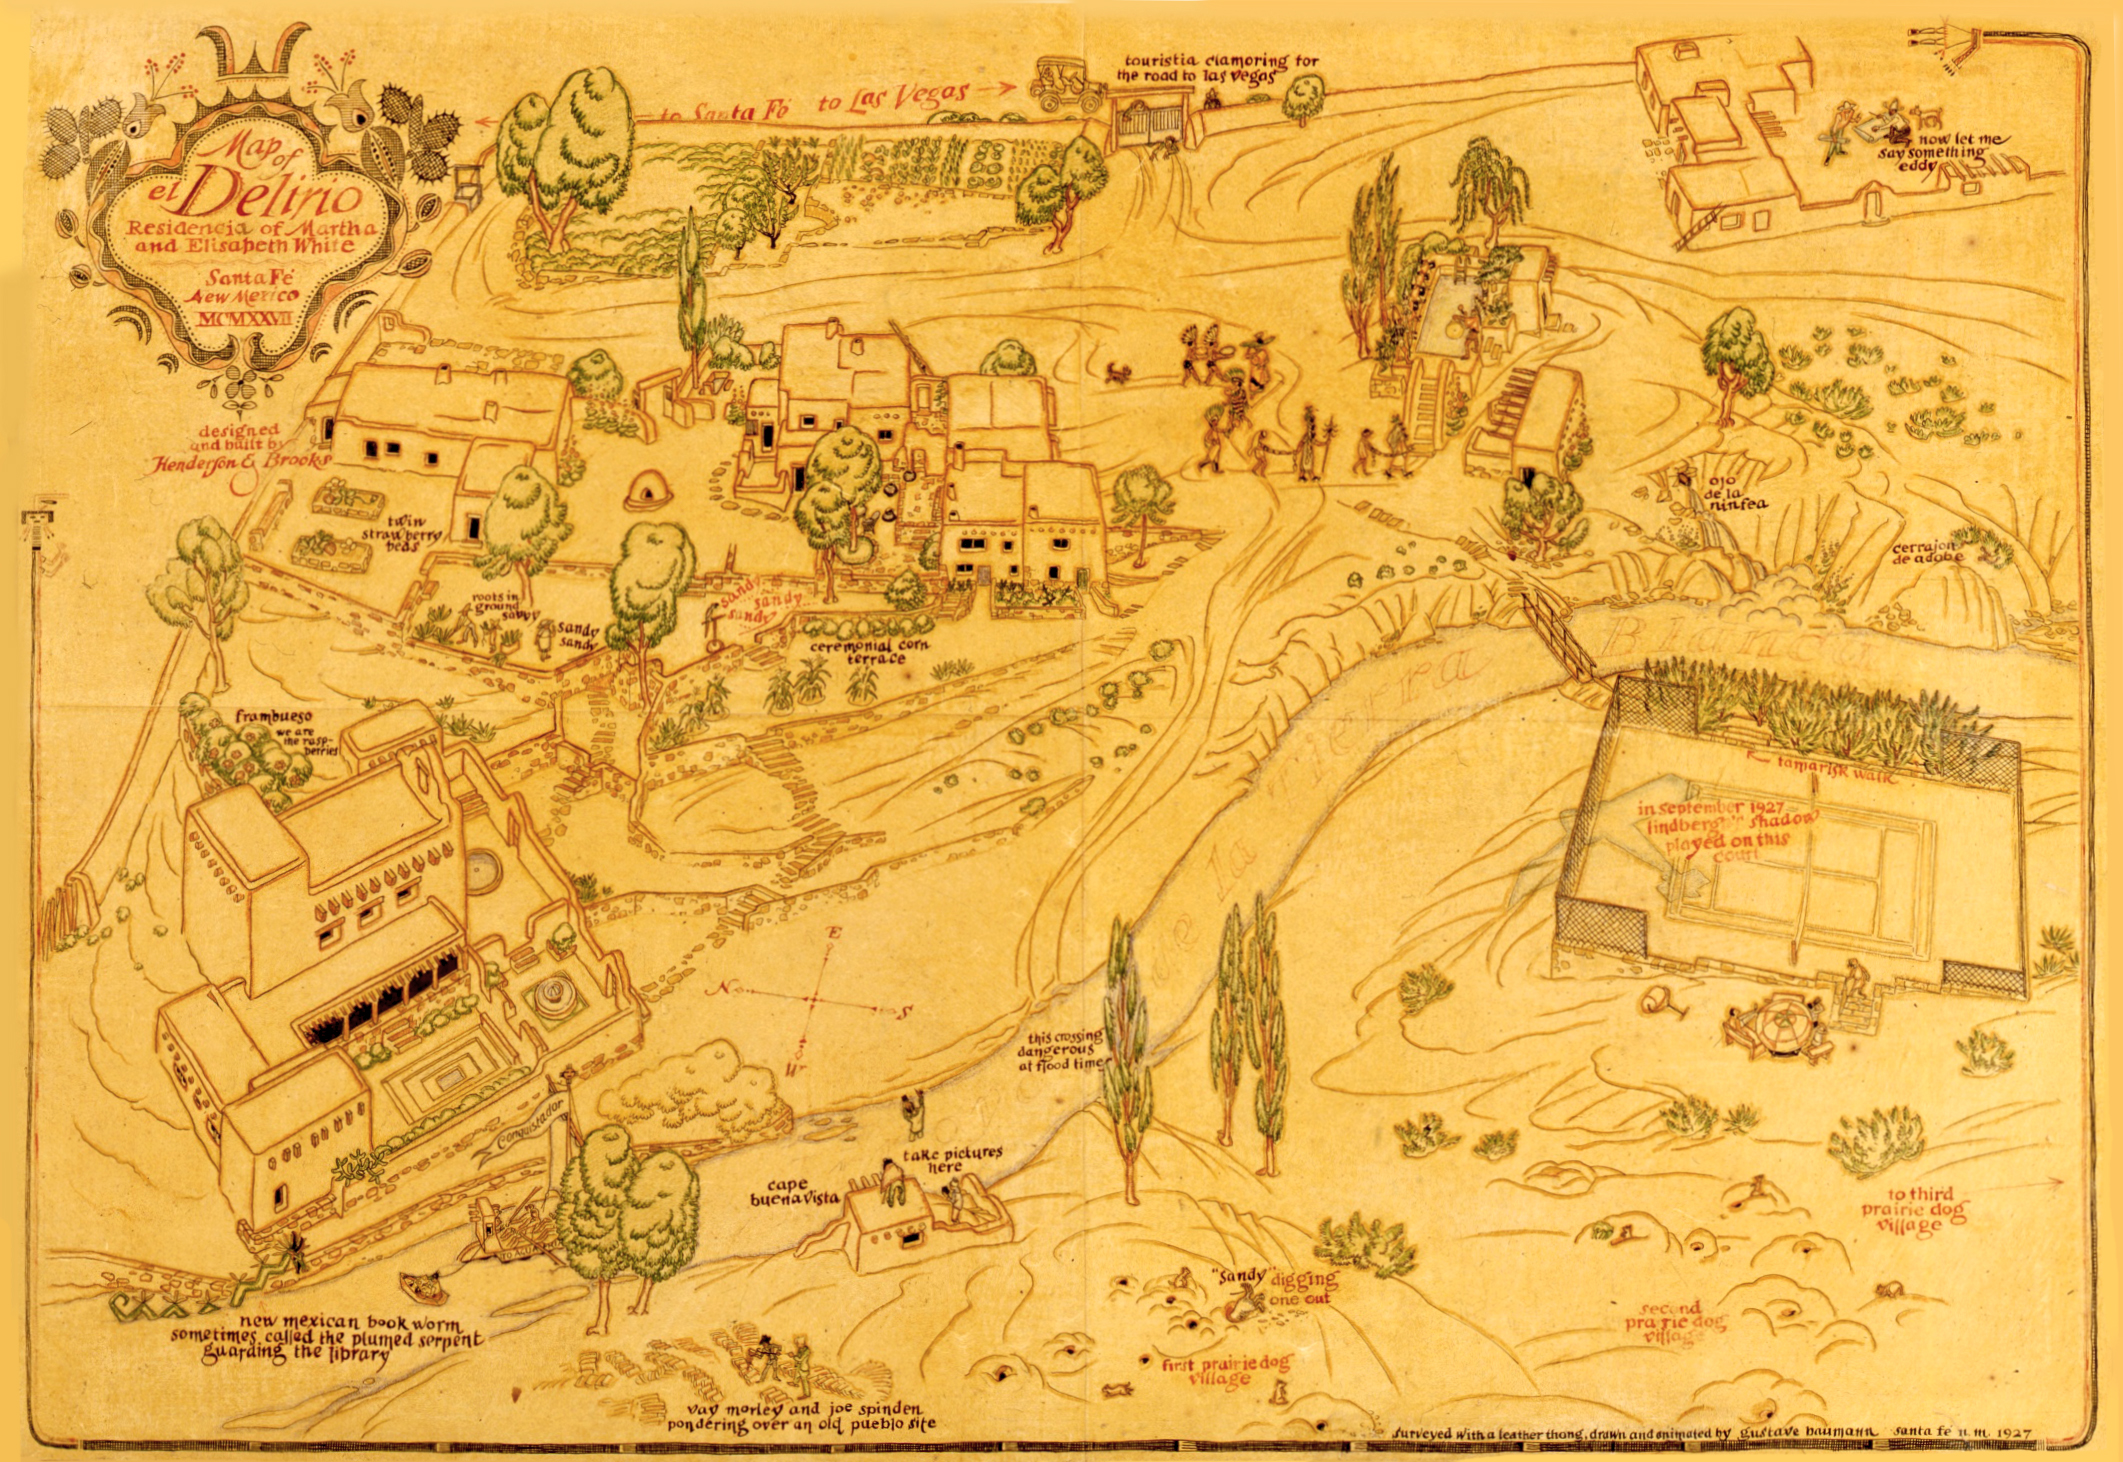 Map of El Delirio (1927), now SAR’s campus